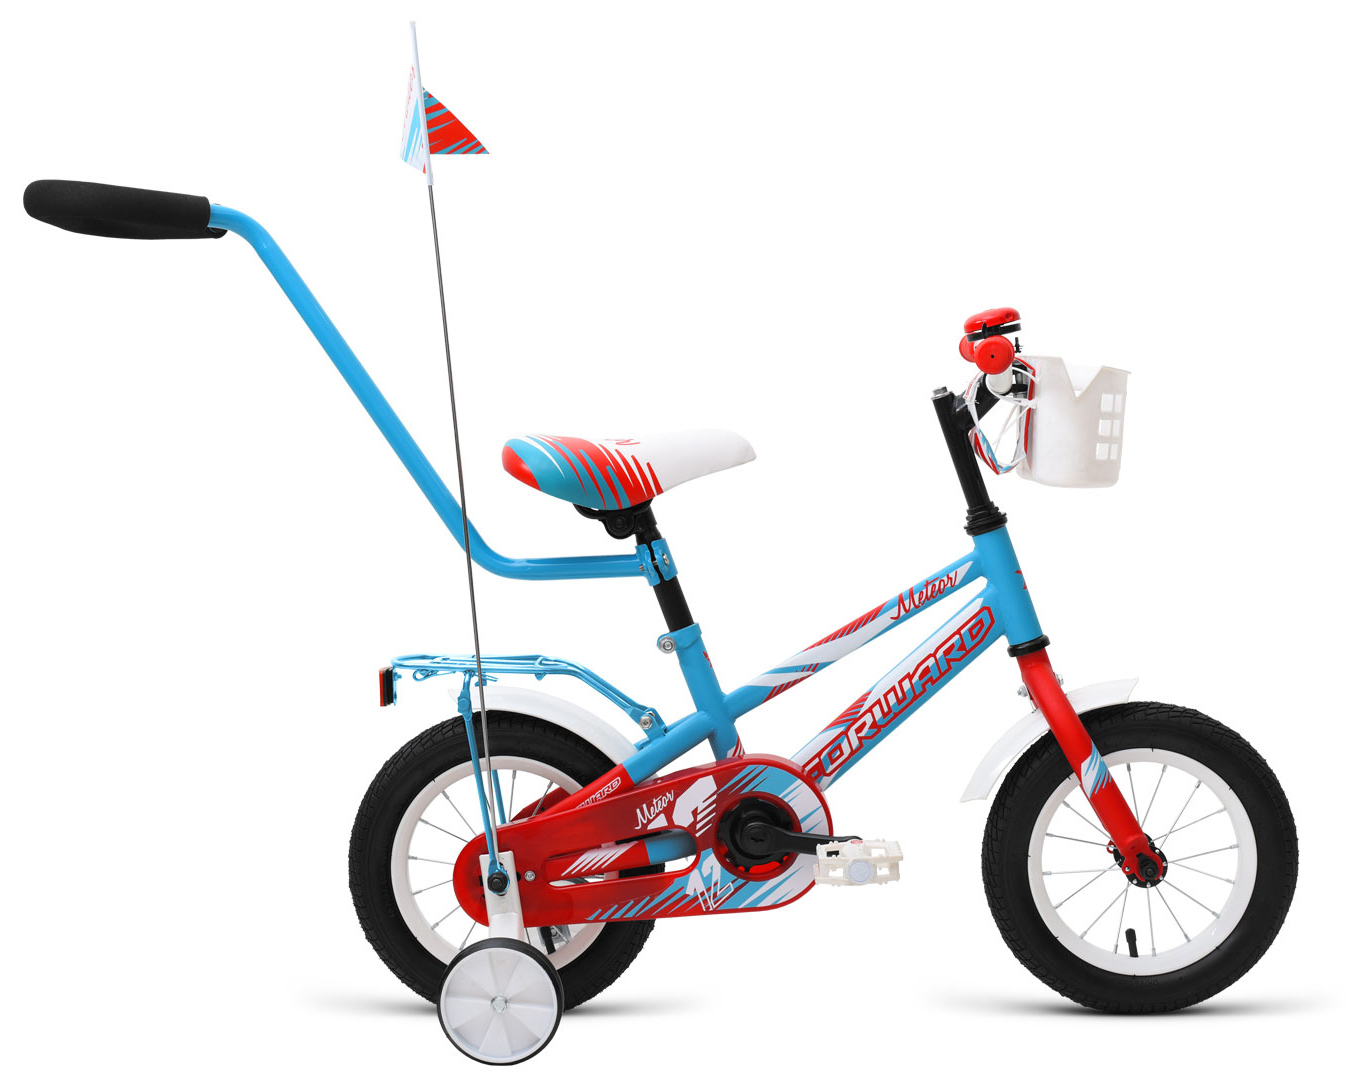  Отзывы о Трехколесный детский велосипед Forward Meteor 12 2019